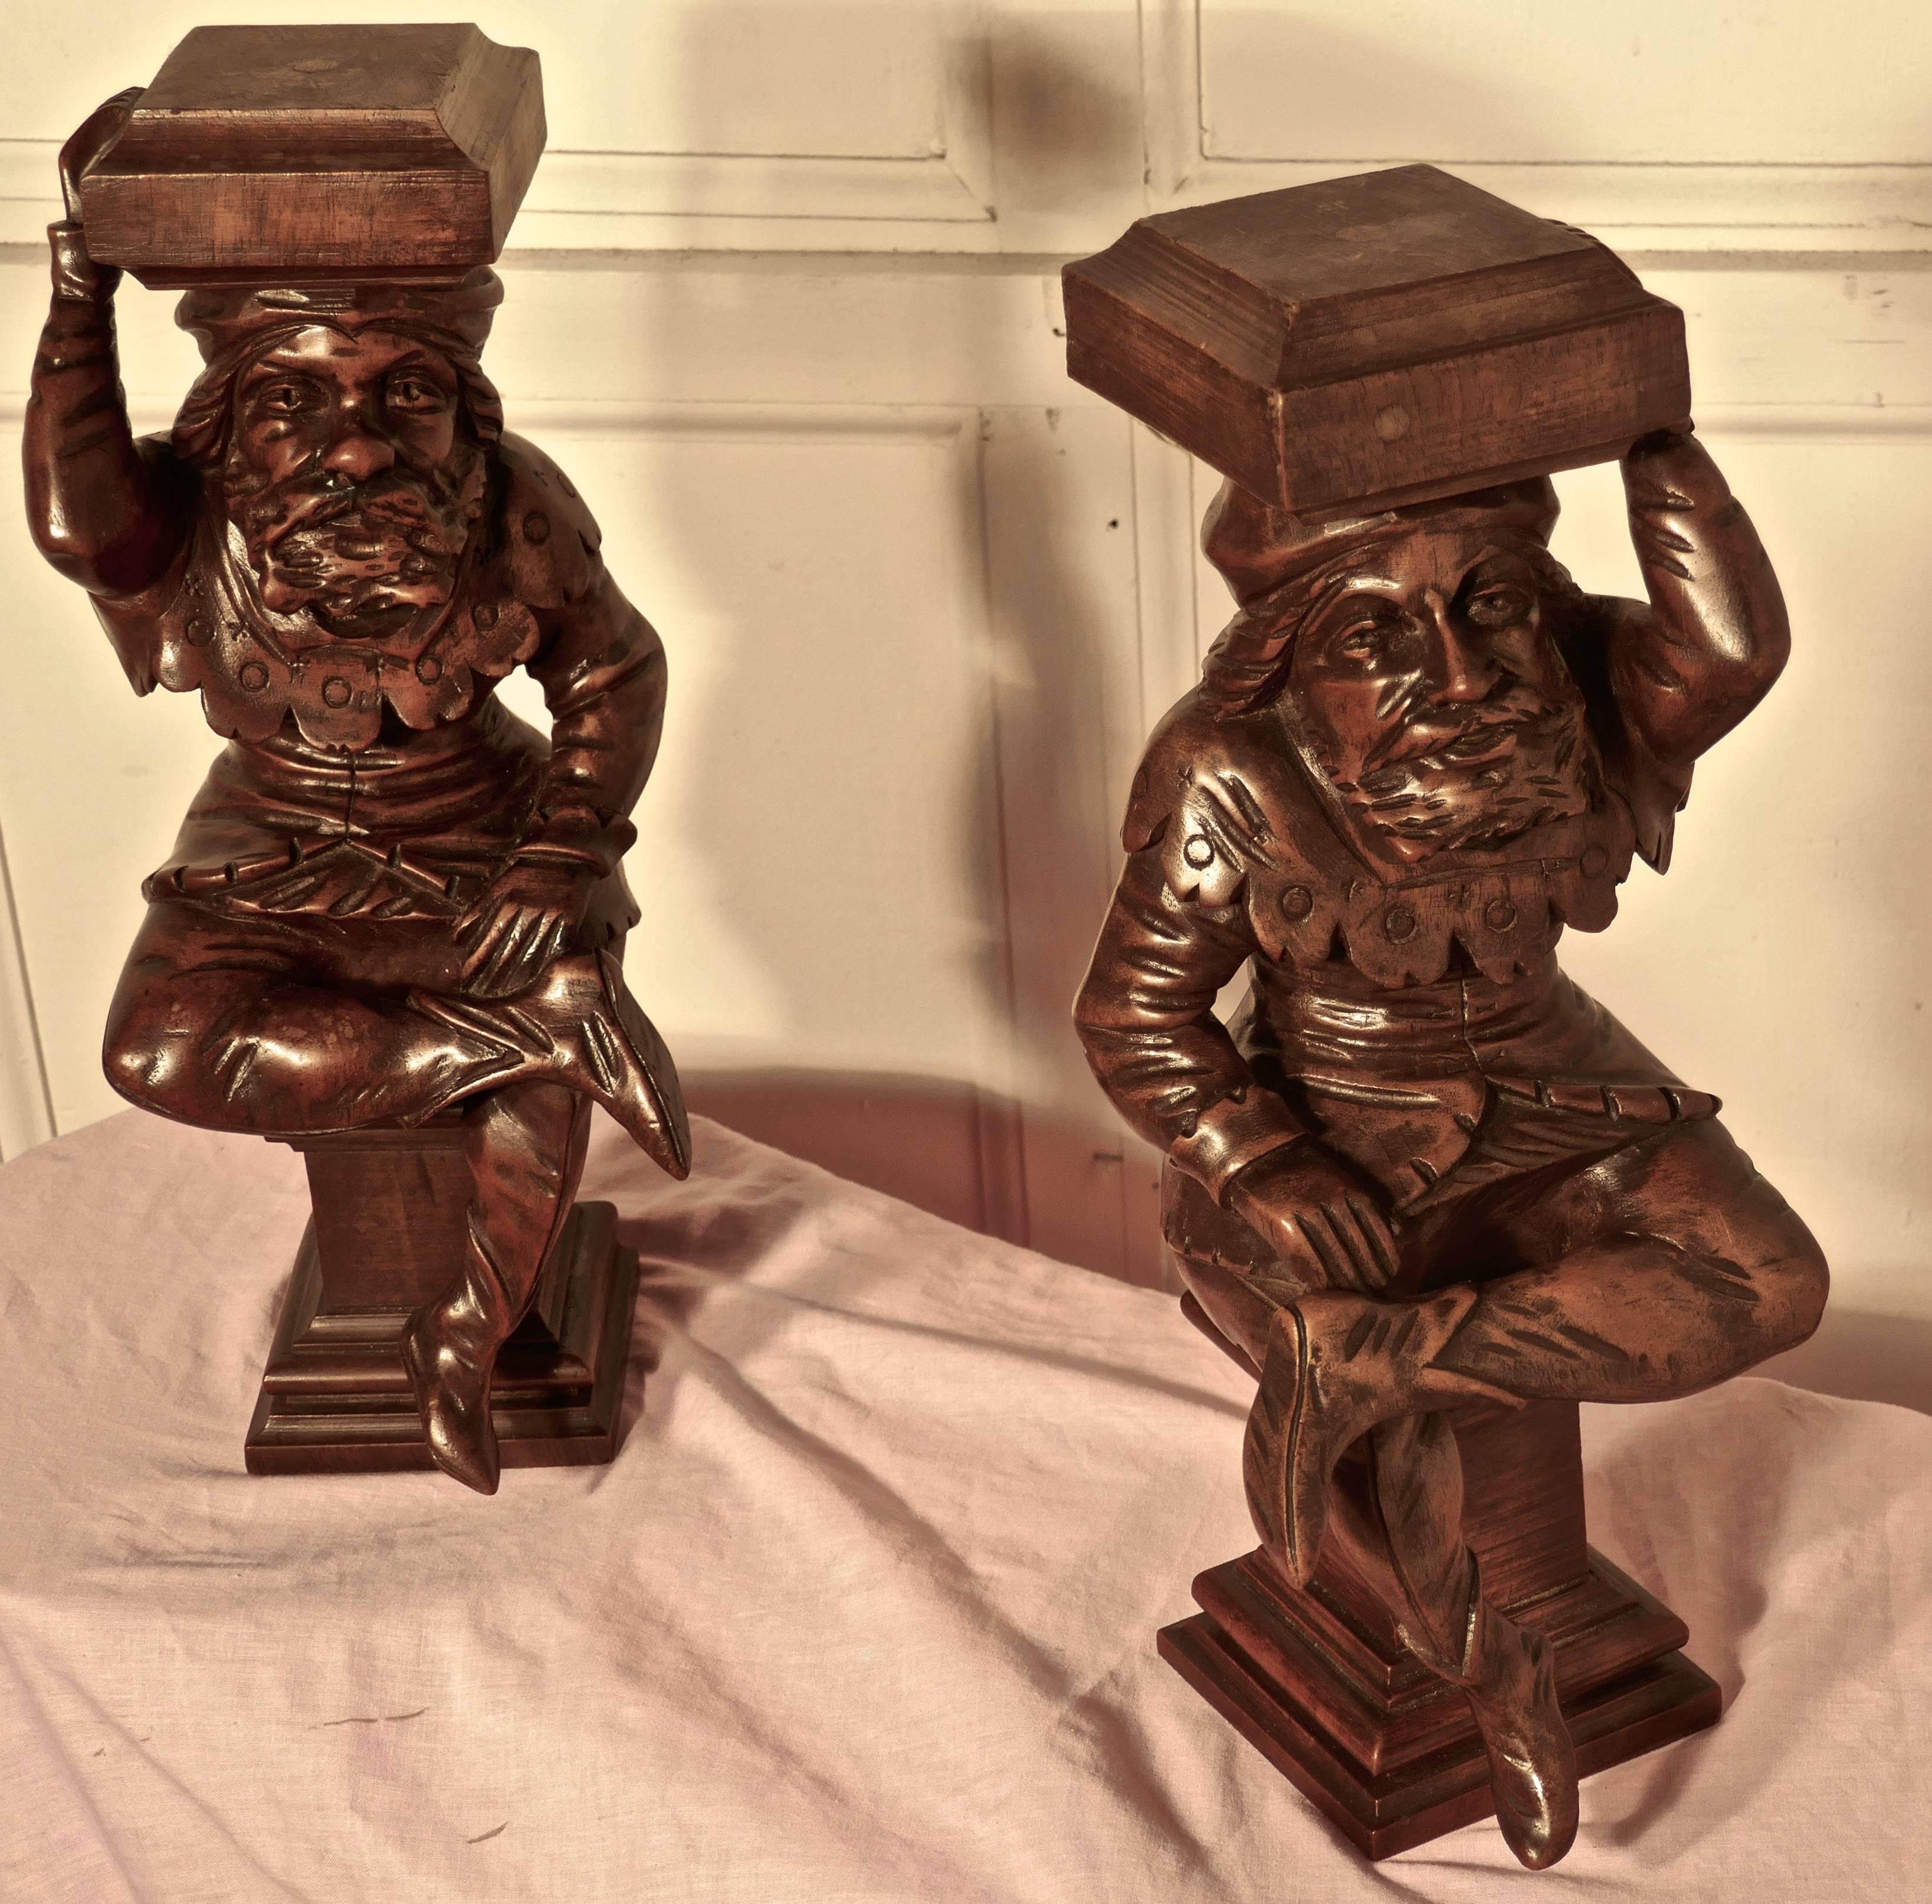 Ein sehr schönes Paar geschnitzter Figuren aus dem frühen 19. Jahrhundert, die Hofnarren darstellen

Diese bärtigen Herren wurden bis ins kleinste Detail geschnitzt, sie stammen ursprünglich von einem Möbelstück aus dem frühen 19.
Beide Charaktere